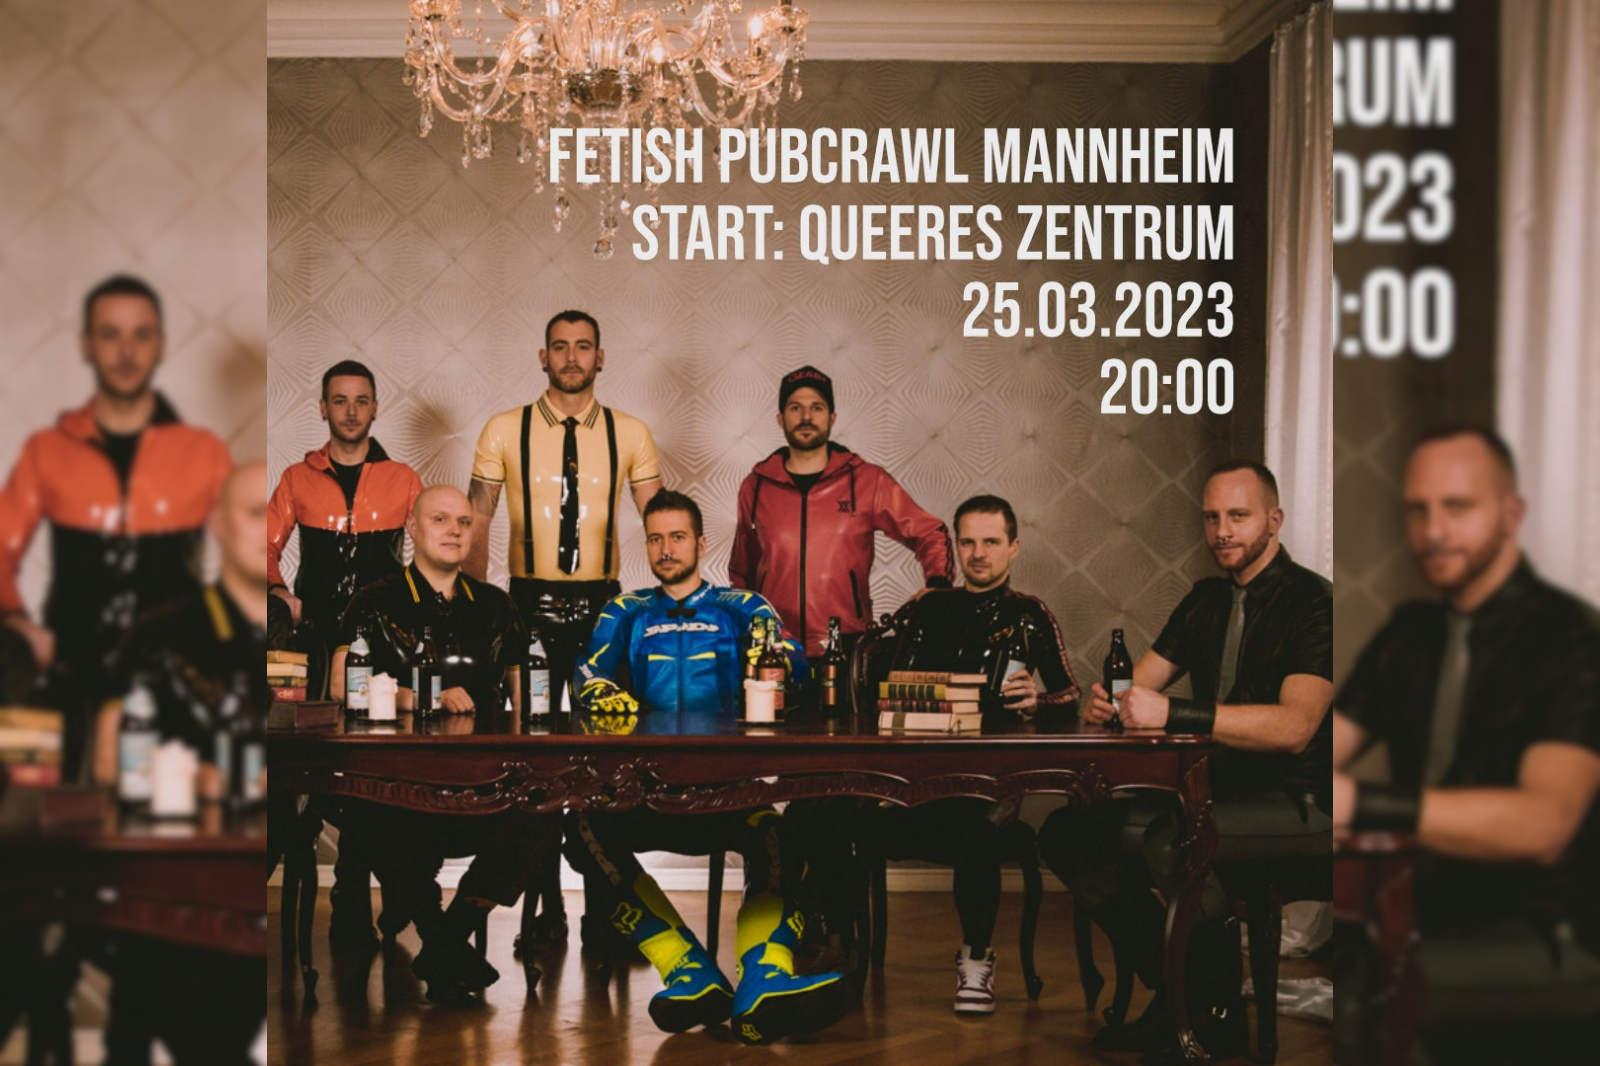 Veranstaltungsbild der Pubcrawl Mannheim Gruppe. Mehrere Männer in verschiedener Fetischkleidung an und um einen Tisch herum. Der Pubcrawl findet am 25. März statt und beginnt um 20:00 Uhr im QZM.